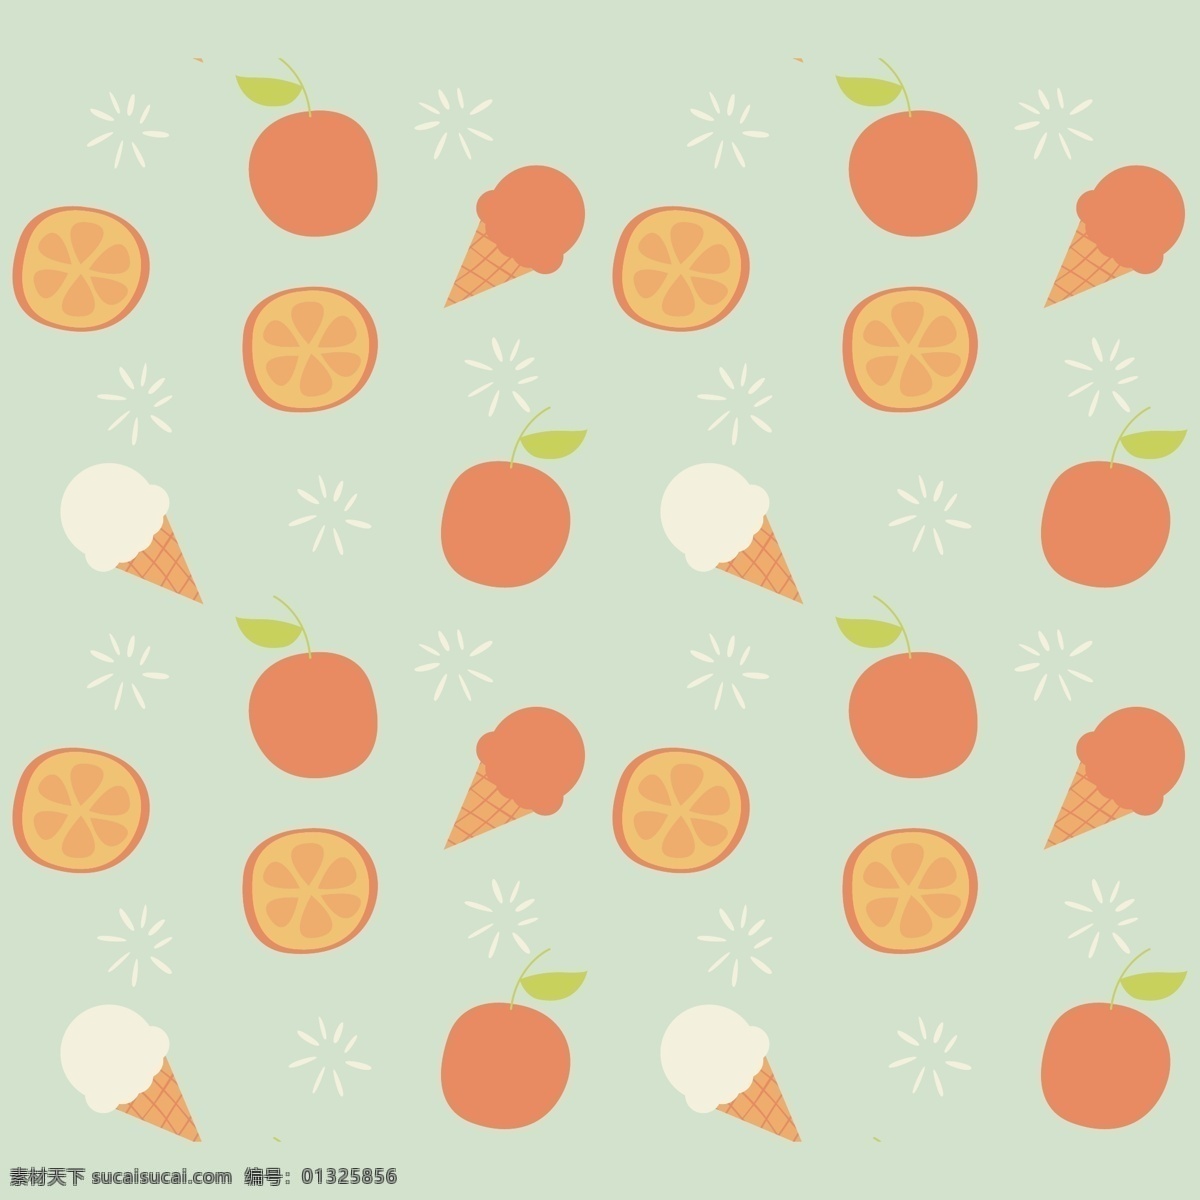 冰淇淋 水果 图案 背景 食品 夏季 苹果 壁纸 橙色 冰 橙色背景 无缝图案 无缝 图案背景 苹果水果 面霜